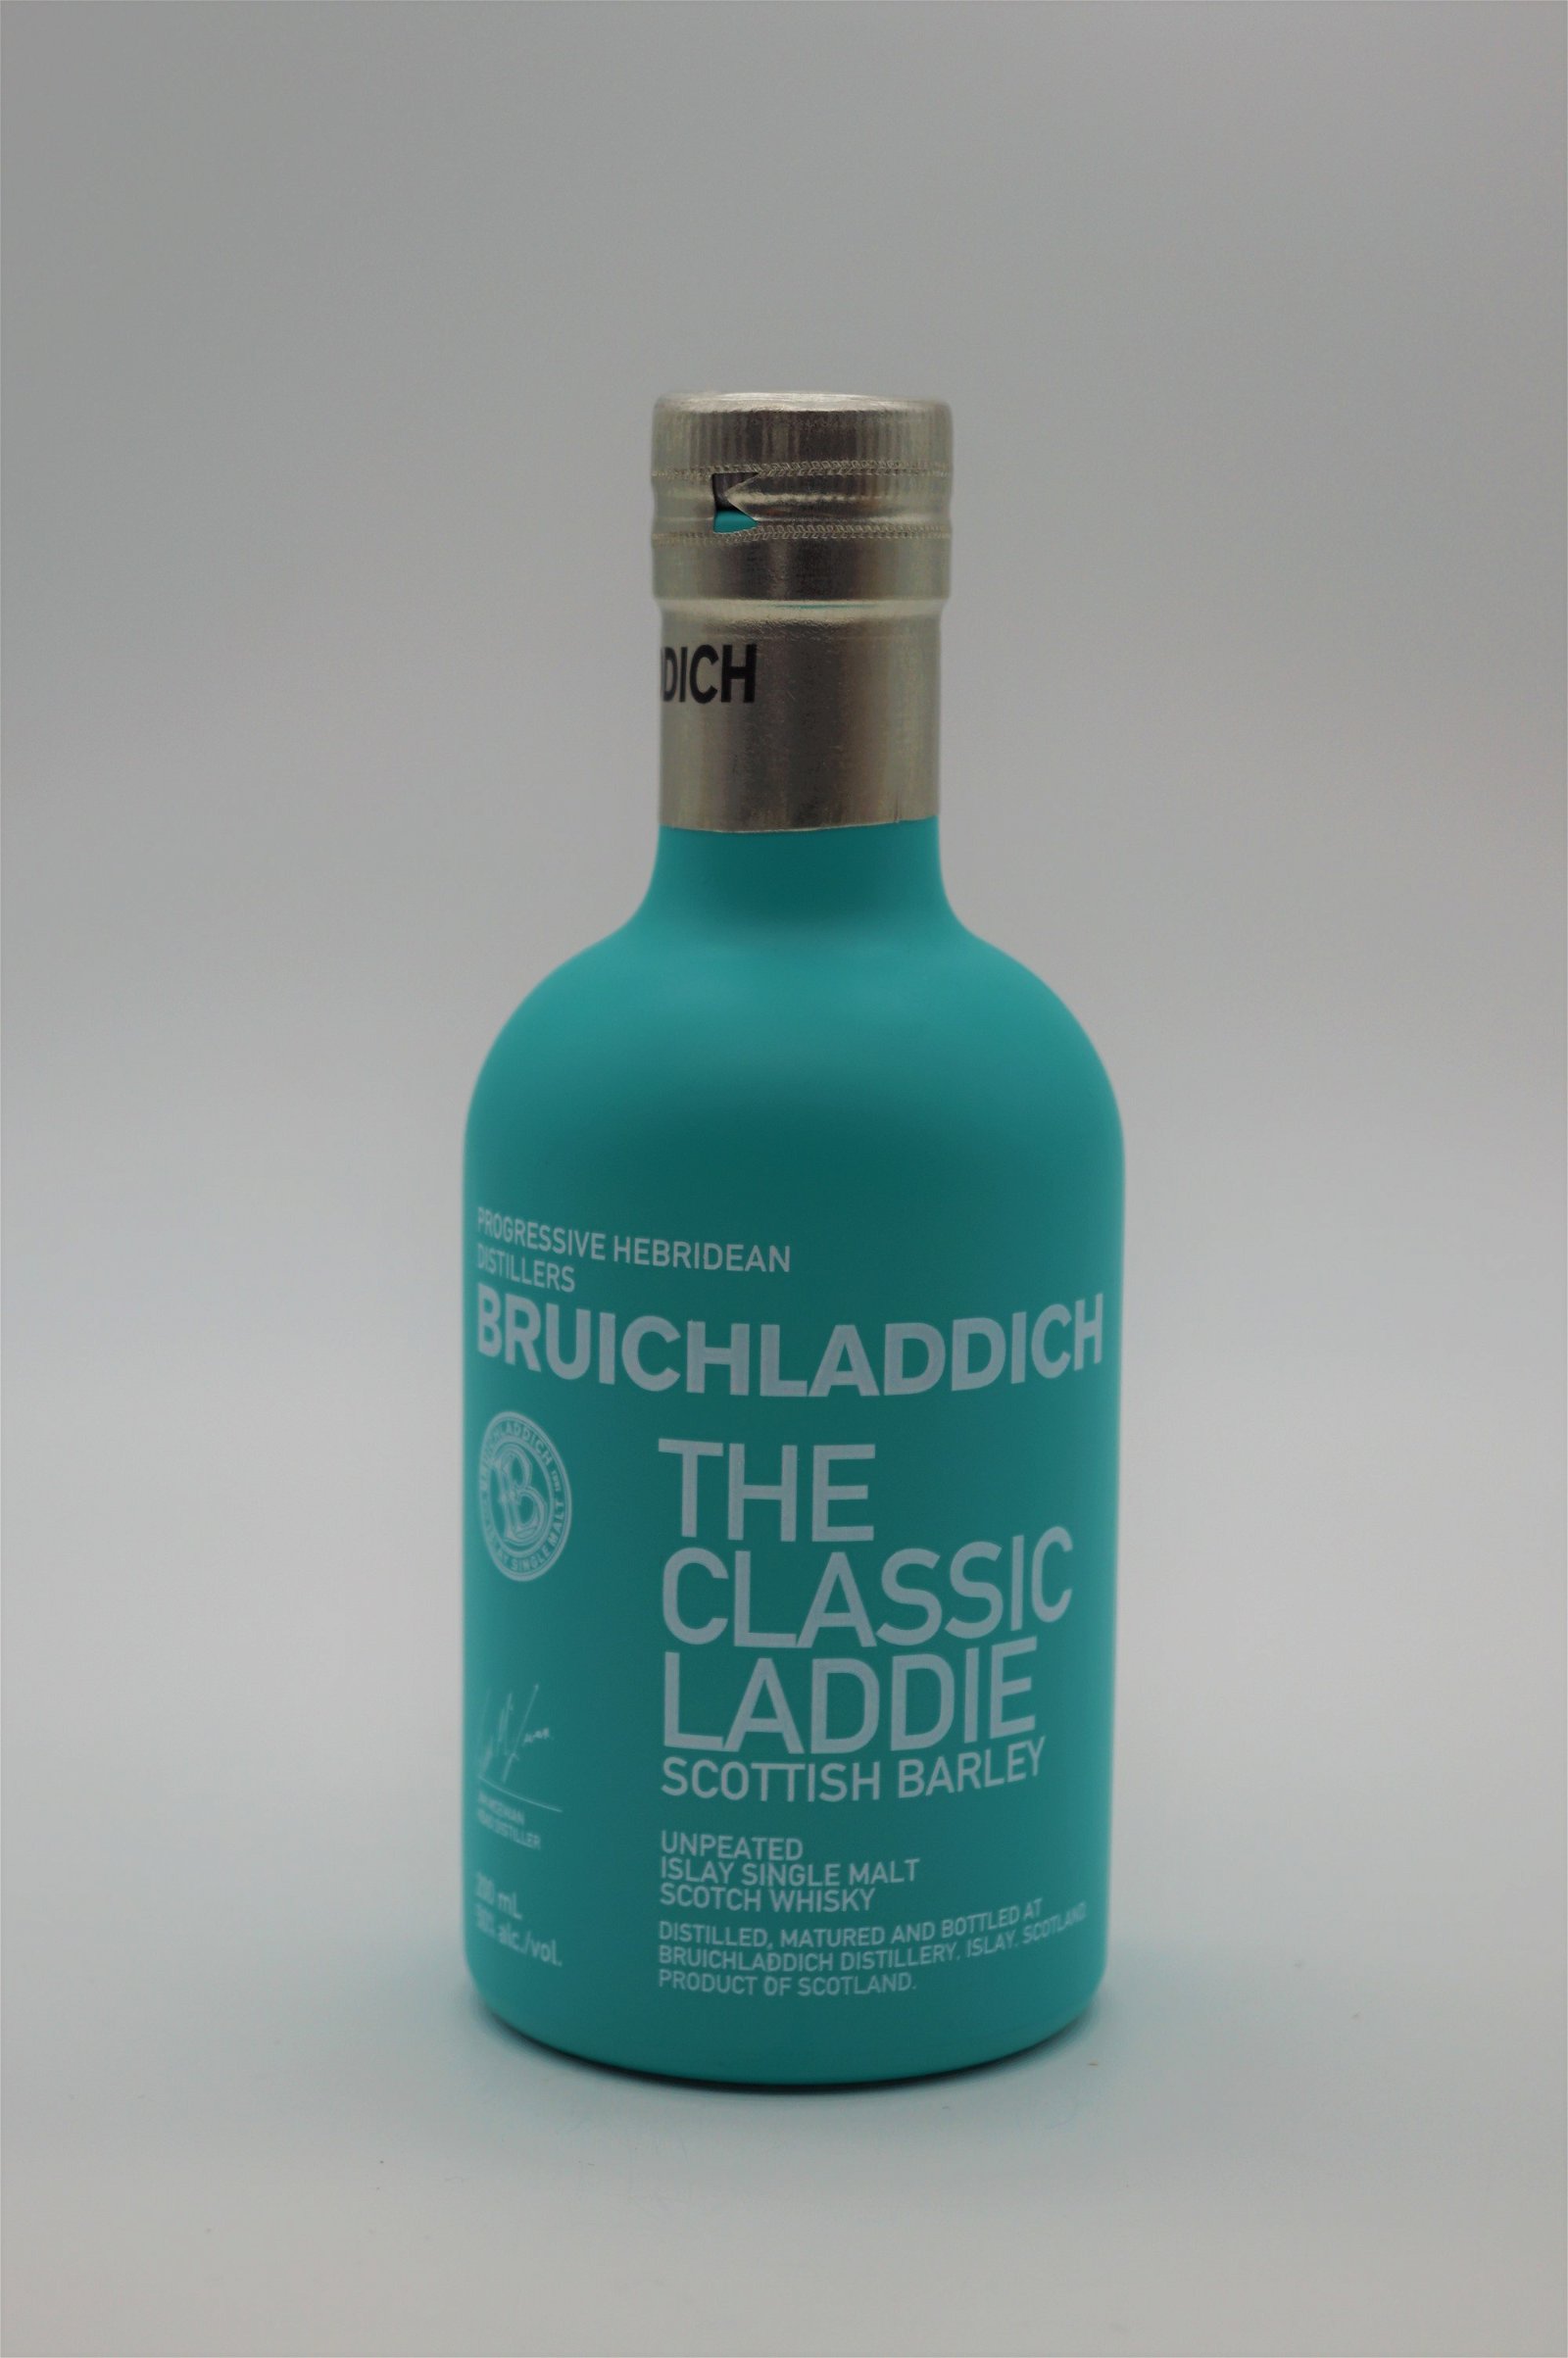 Bruichladdich The Classic Laddie Scottish Barley Single Malt Scotch